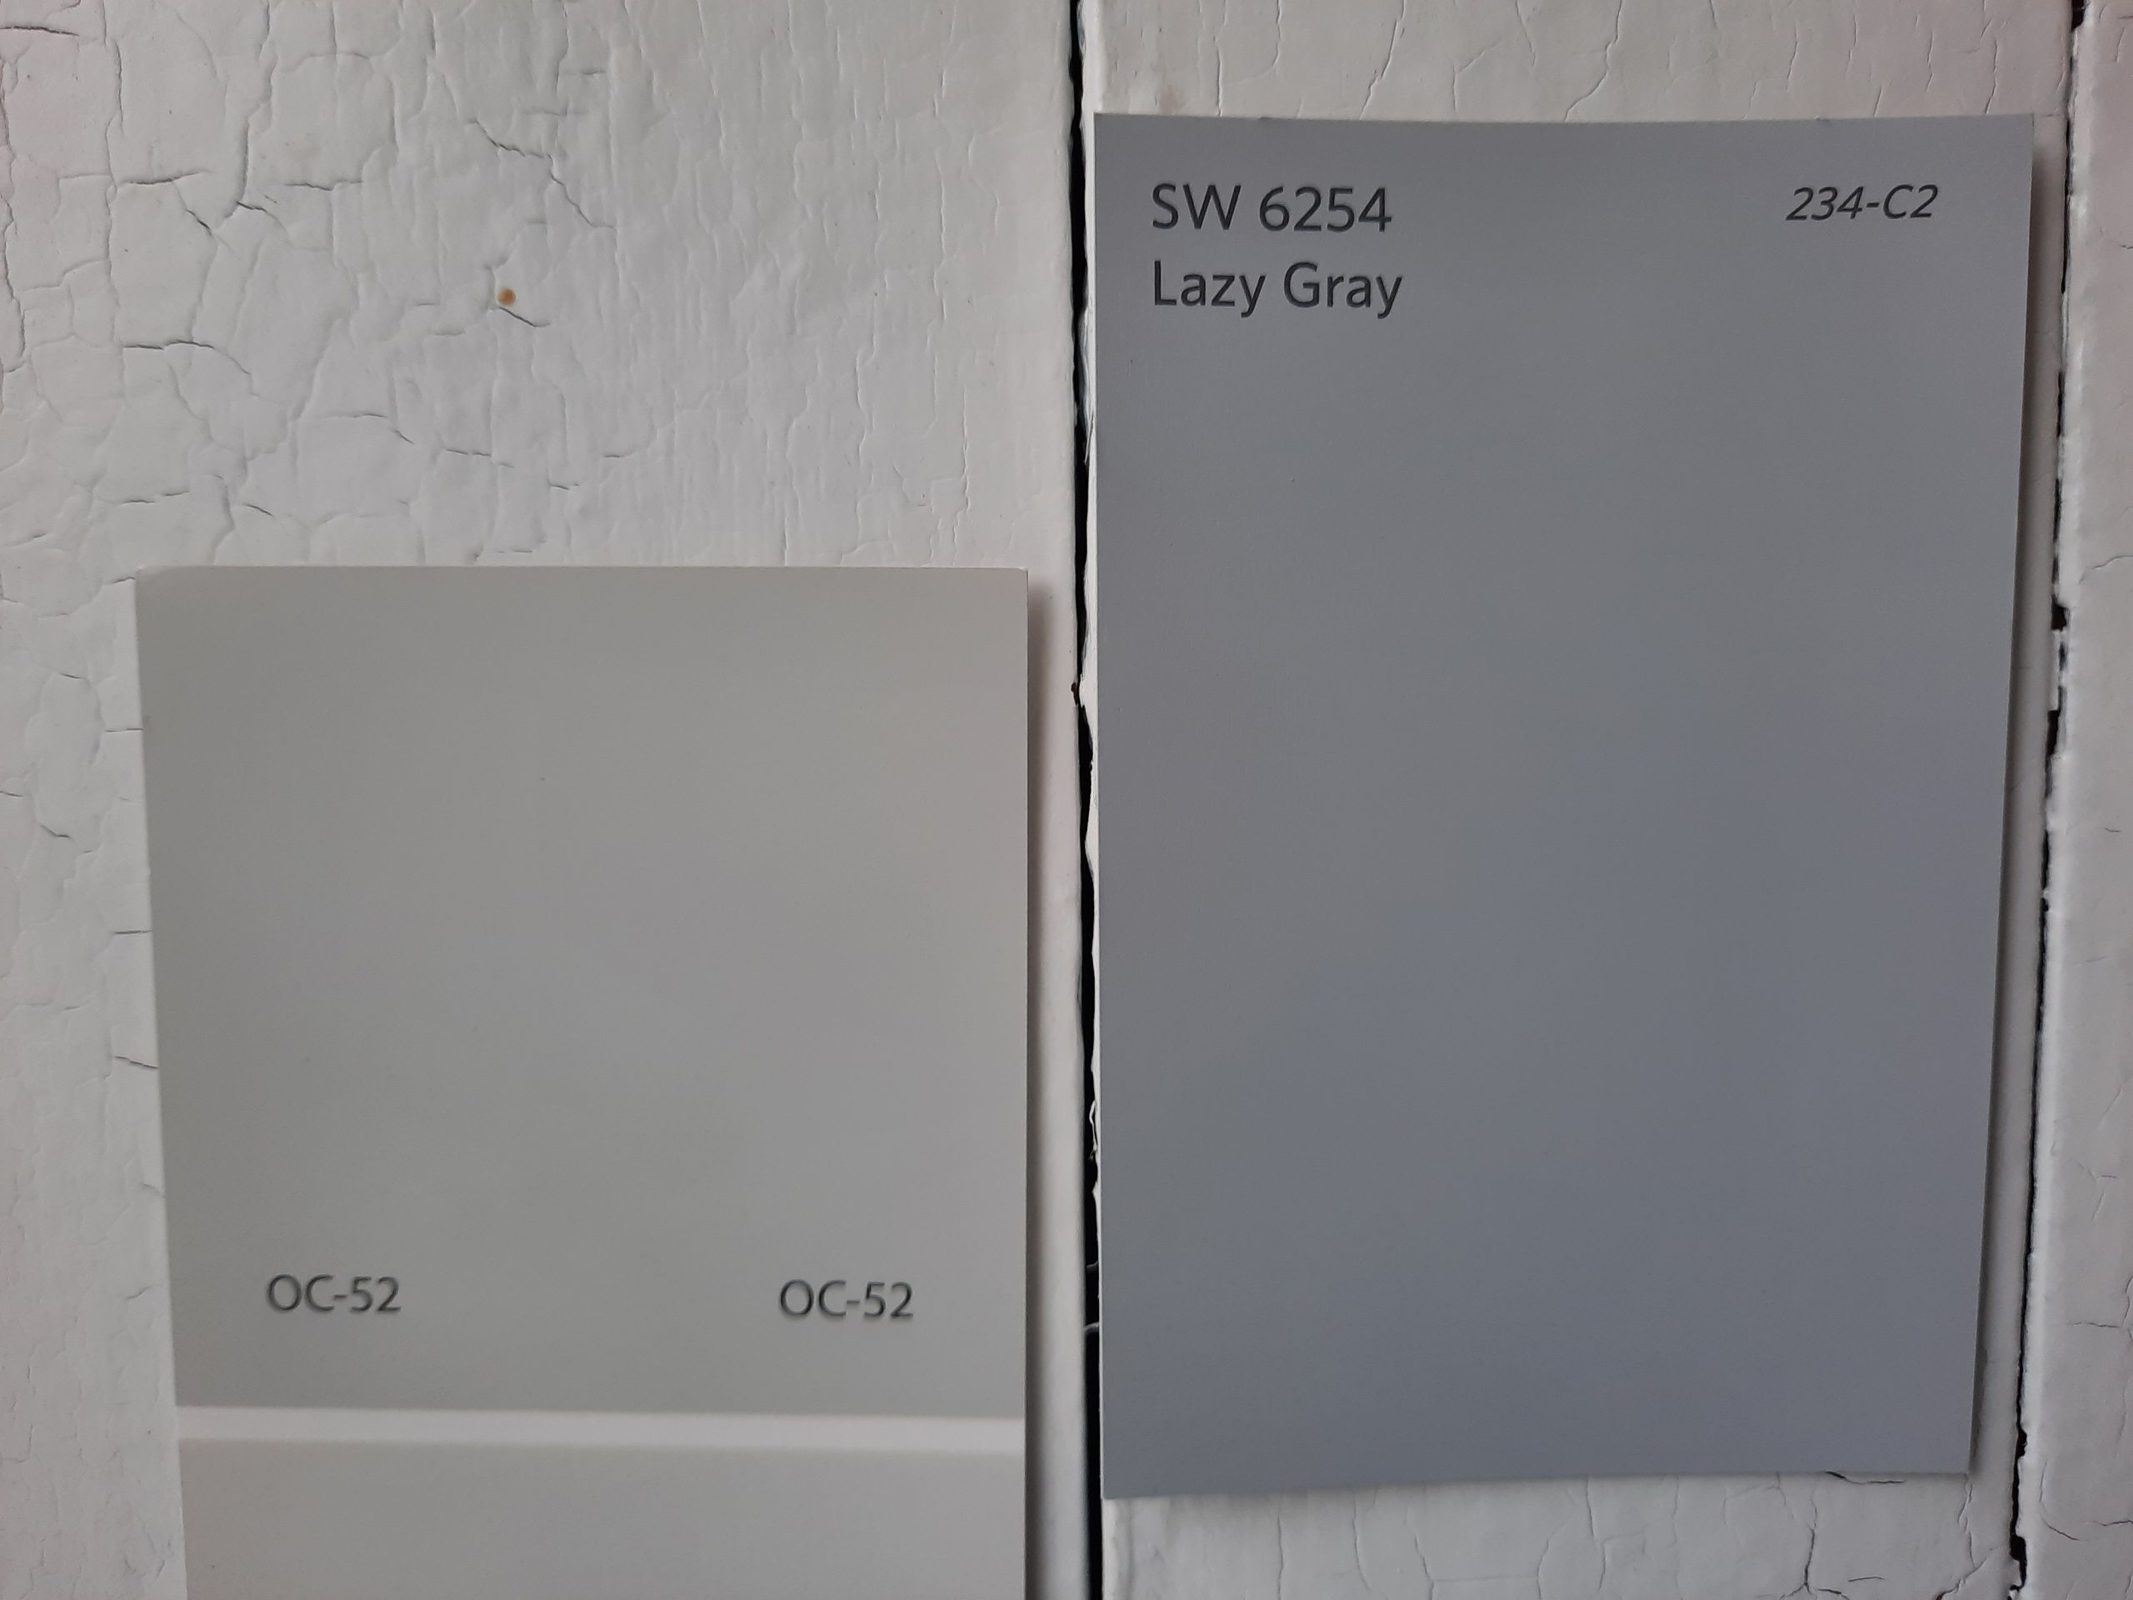 7 Lazy Gray vs Gray Owl scaled